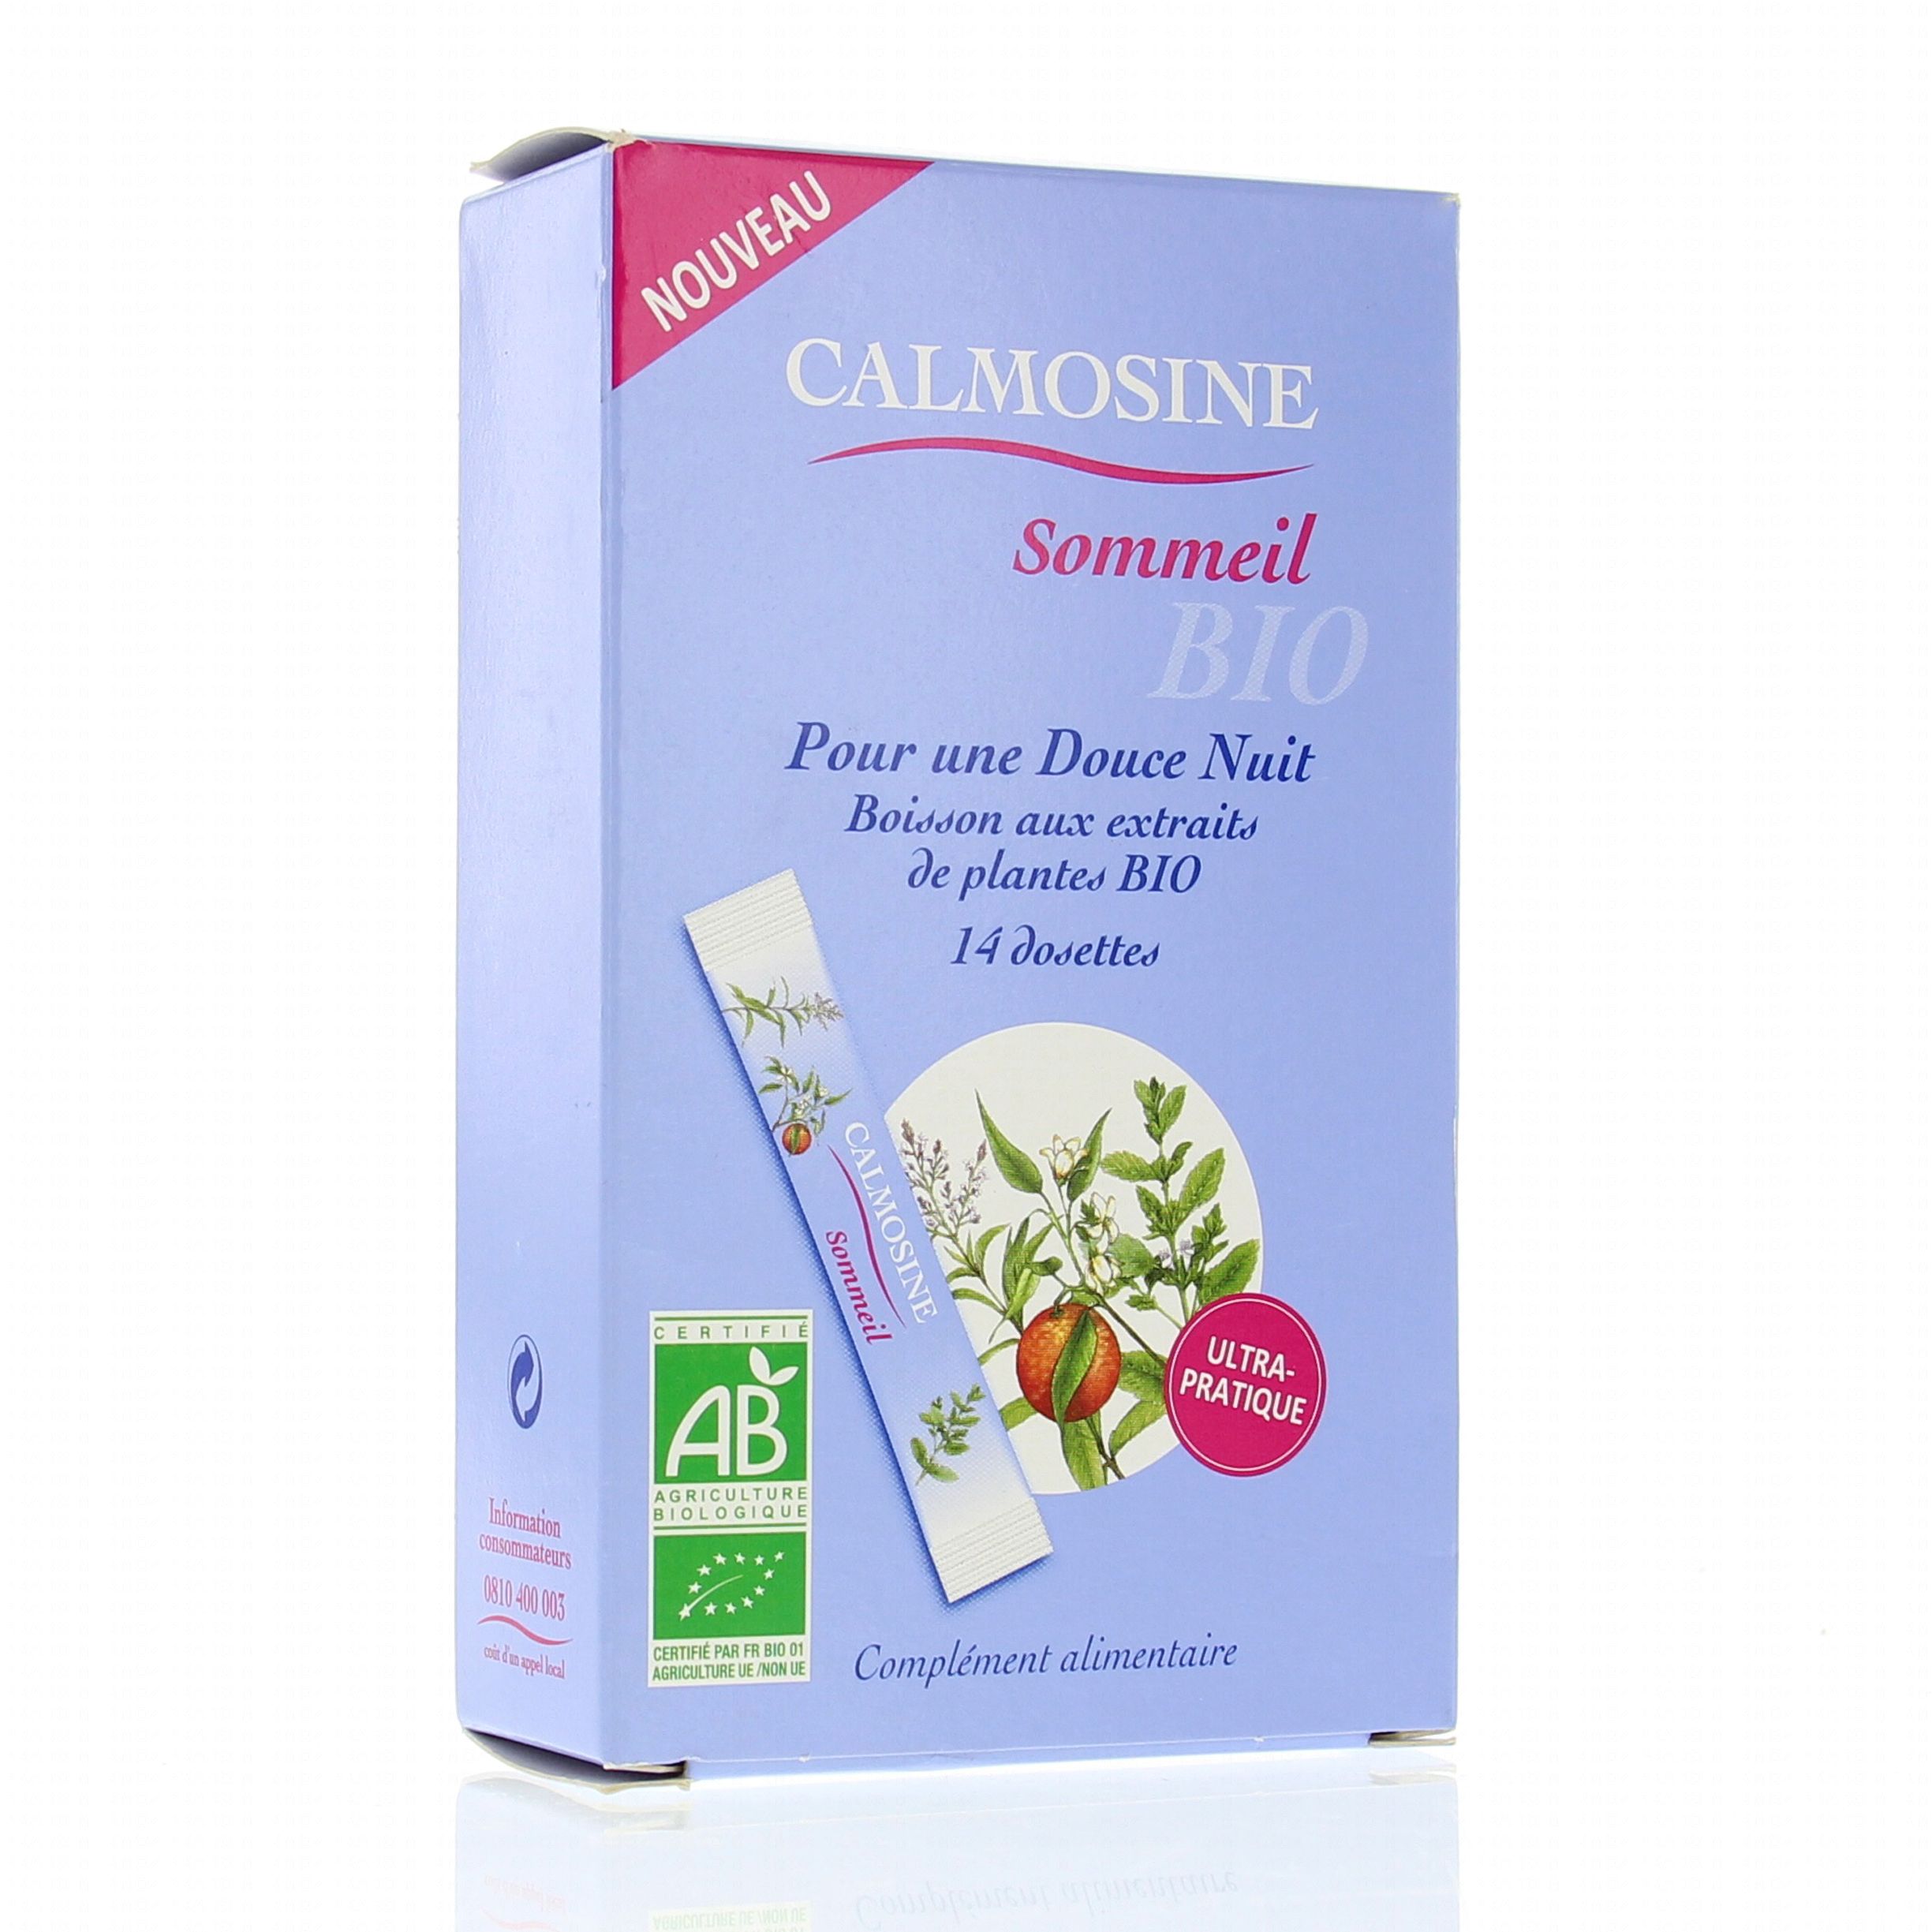 CALMOSINE Sommeil bio boîte de 14 dosettes de 10ml - Pharmacie Prado Mermoz